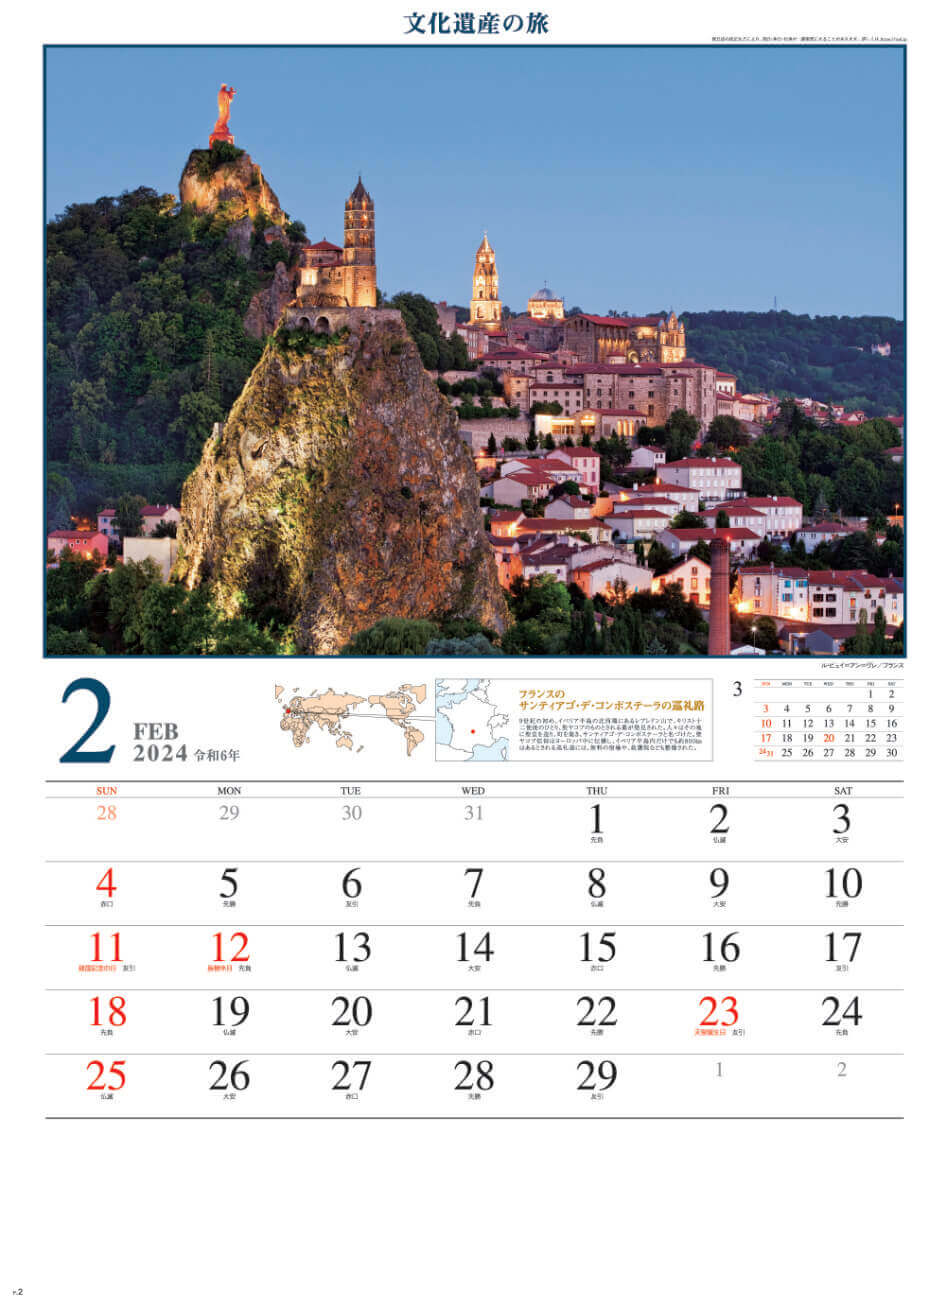 ル・ピュイ＝アン＝ヴレ(フランス) 文化遺産の旅(ユネスコ世界遺産) 2024年カレンダーの画像